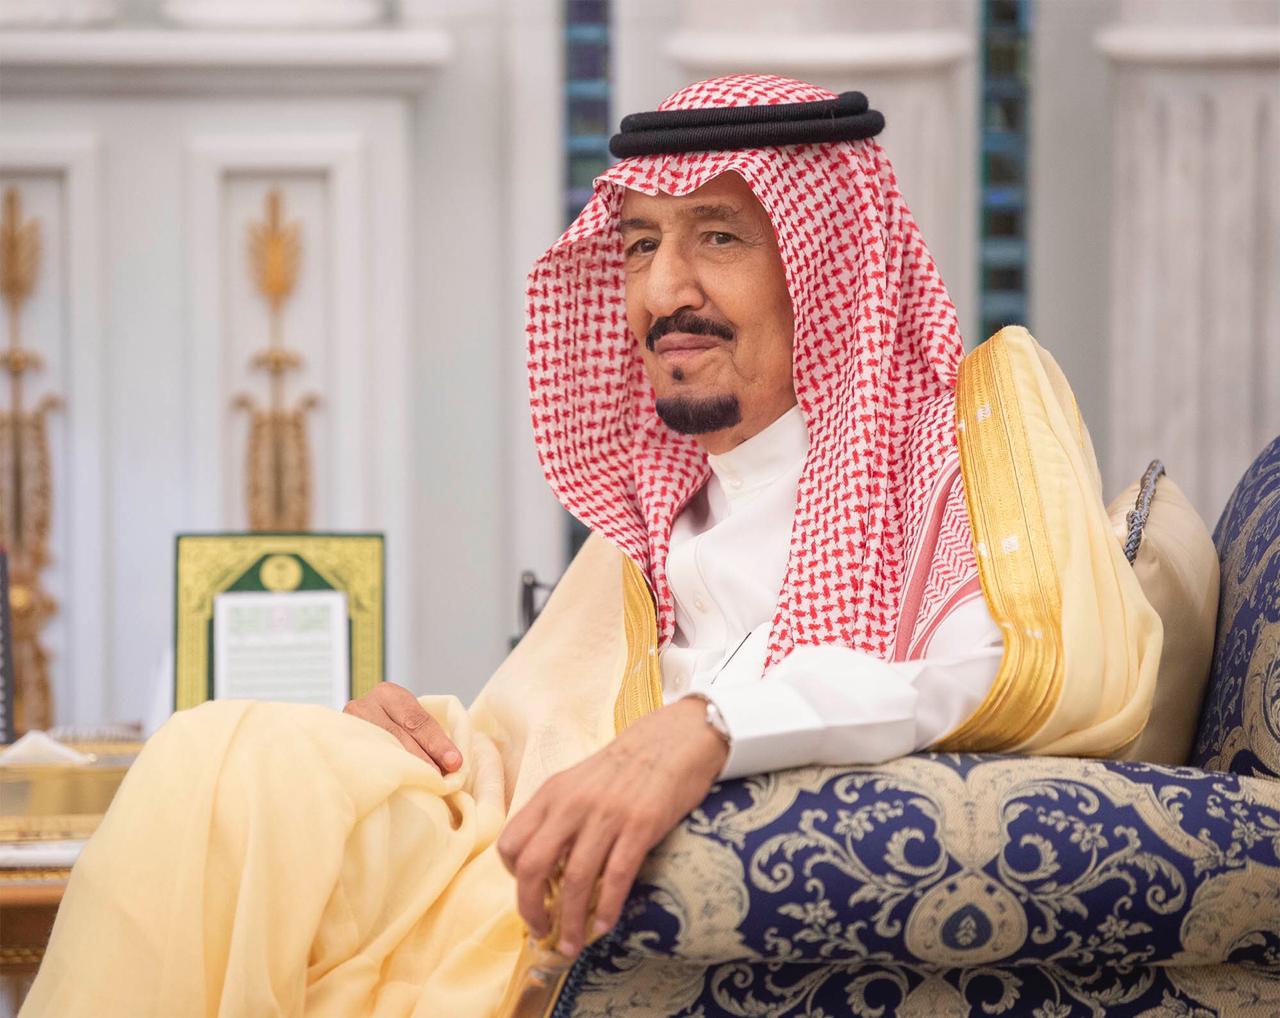 الملك سلمان يعفي الفالح ويعين عبدالعزيز بن سلمان وزيرا للطاقة